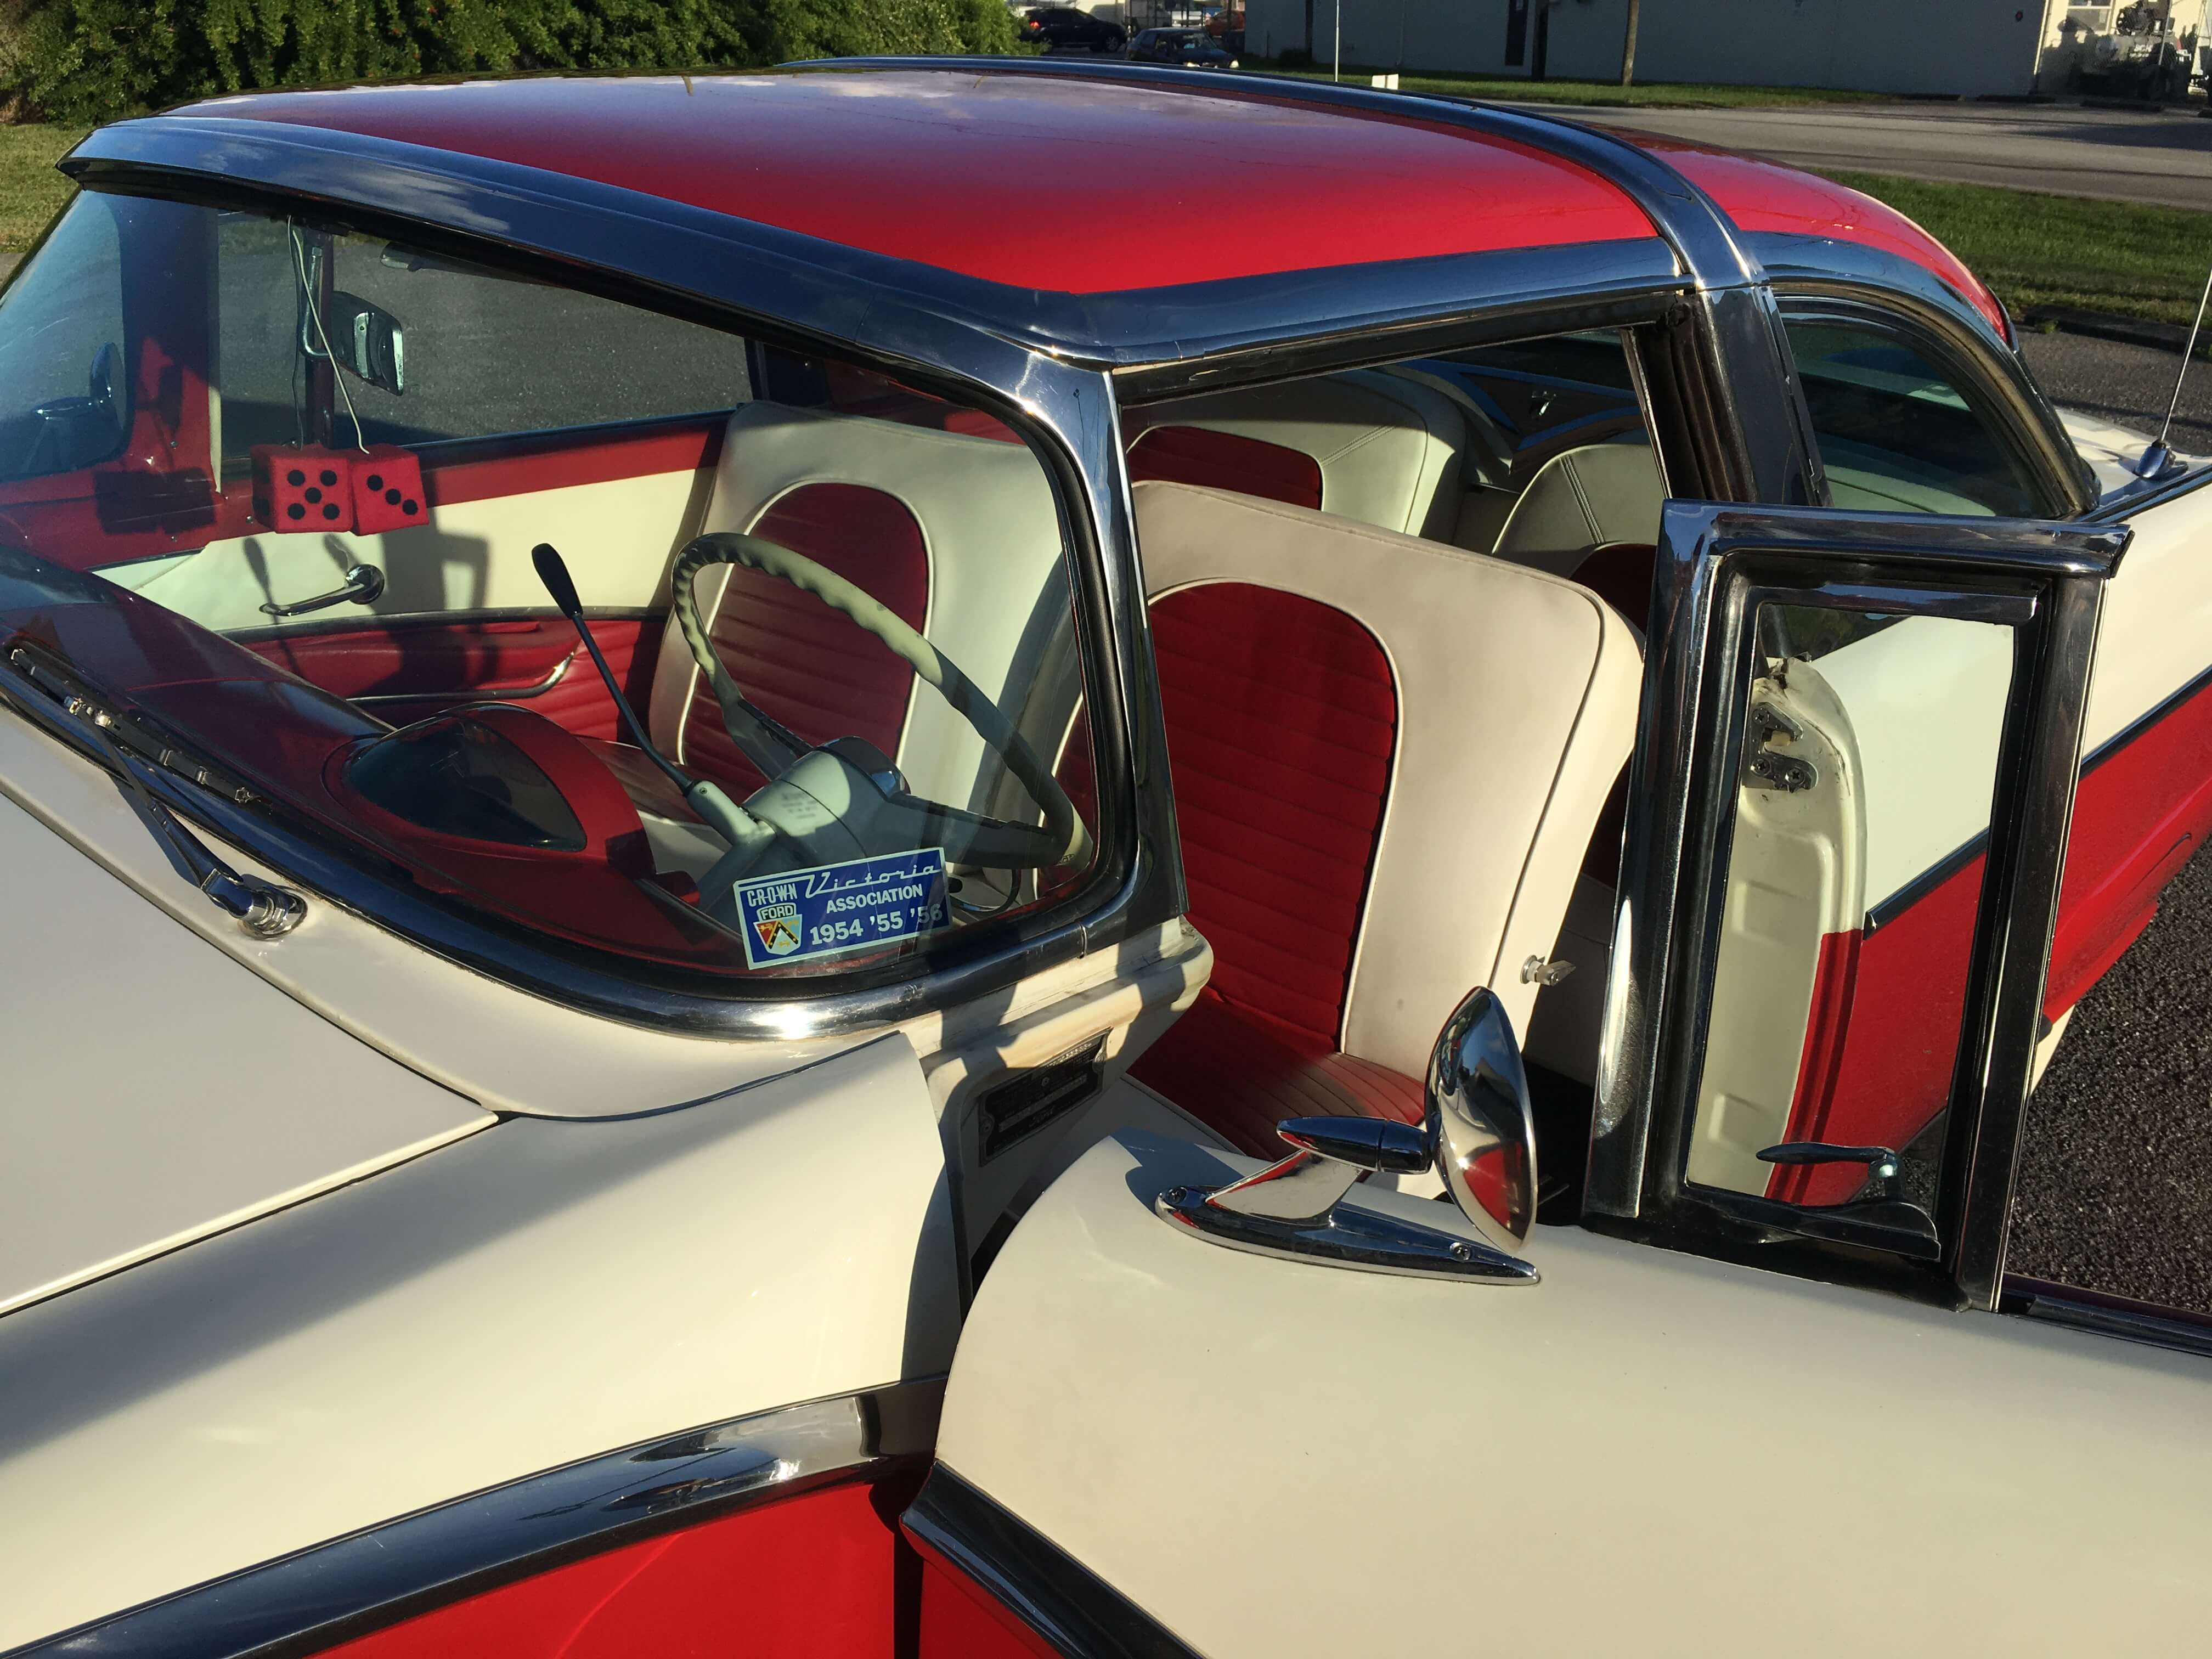 1955 Ford Crown Victoria interior